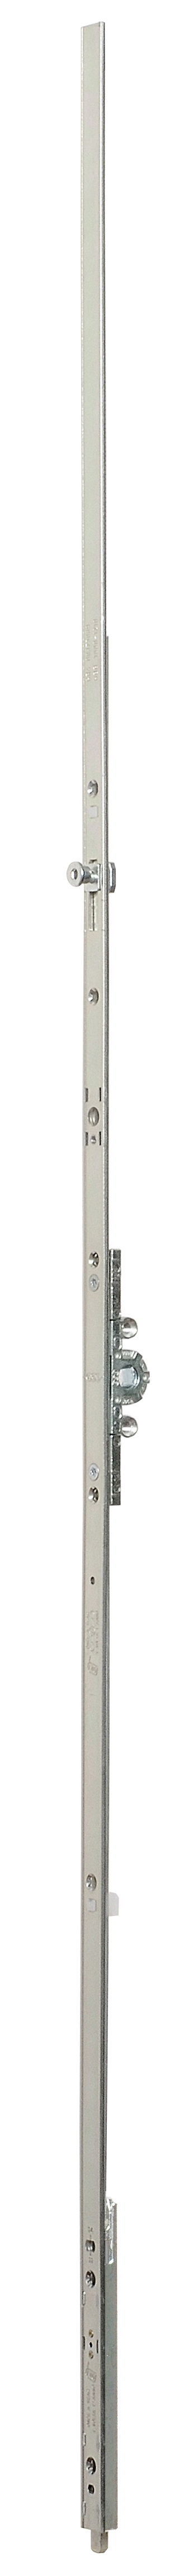 AGB -  Cremonese ARTECH anta a bandiera altezza maniglia fissa con puntale chiusura ad espansione per seconda anta - gr / dim. 05 - entrata 15 - alt. man. 500 - lbb/hbb 1194 - 1410